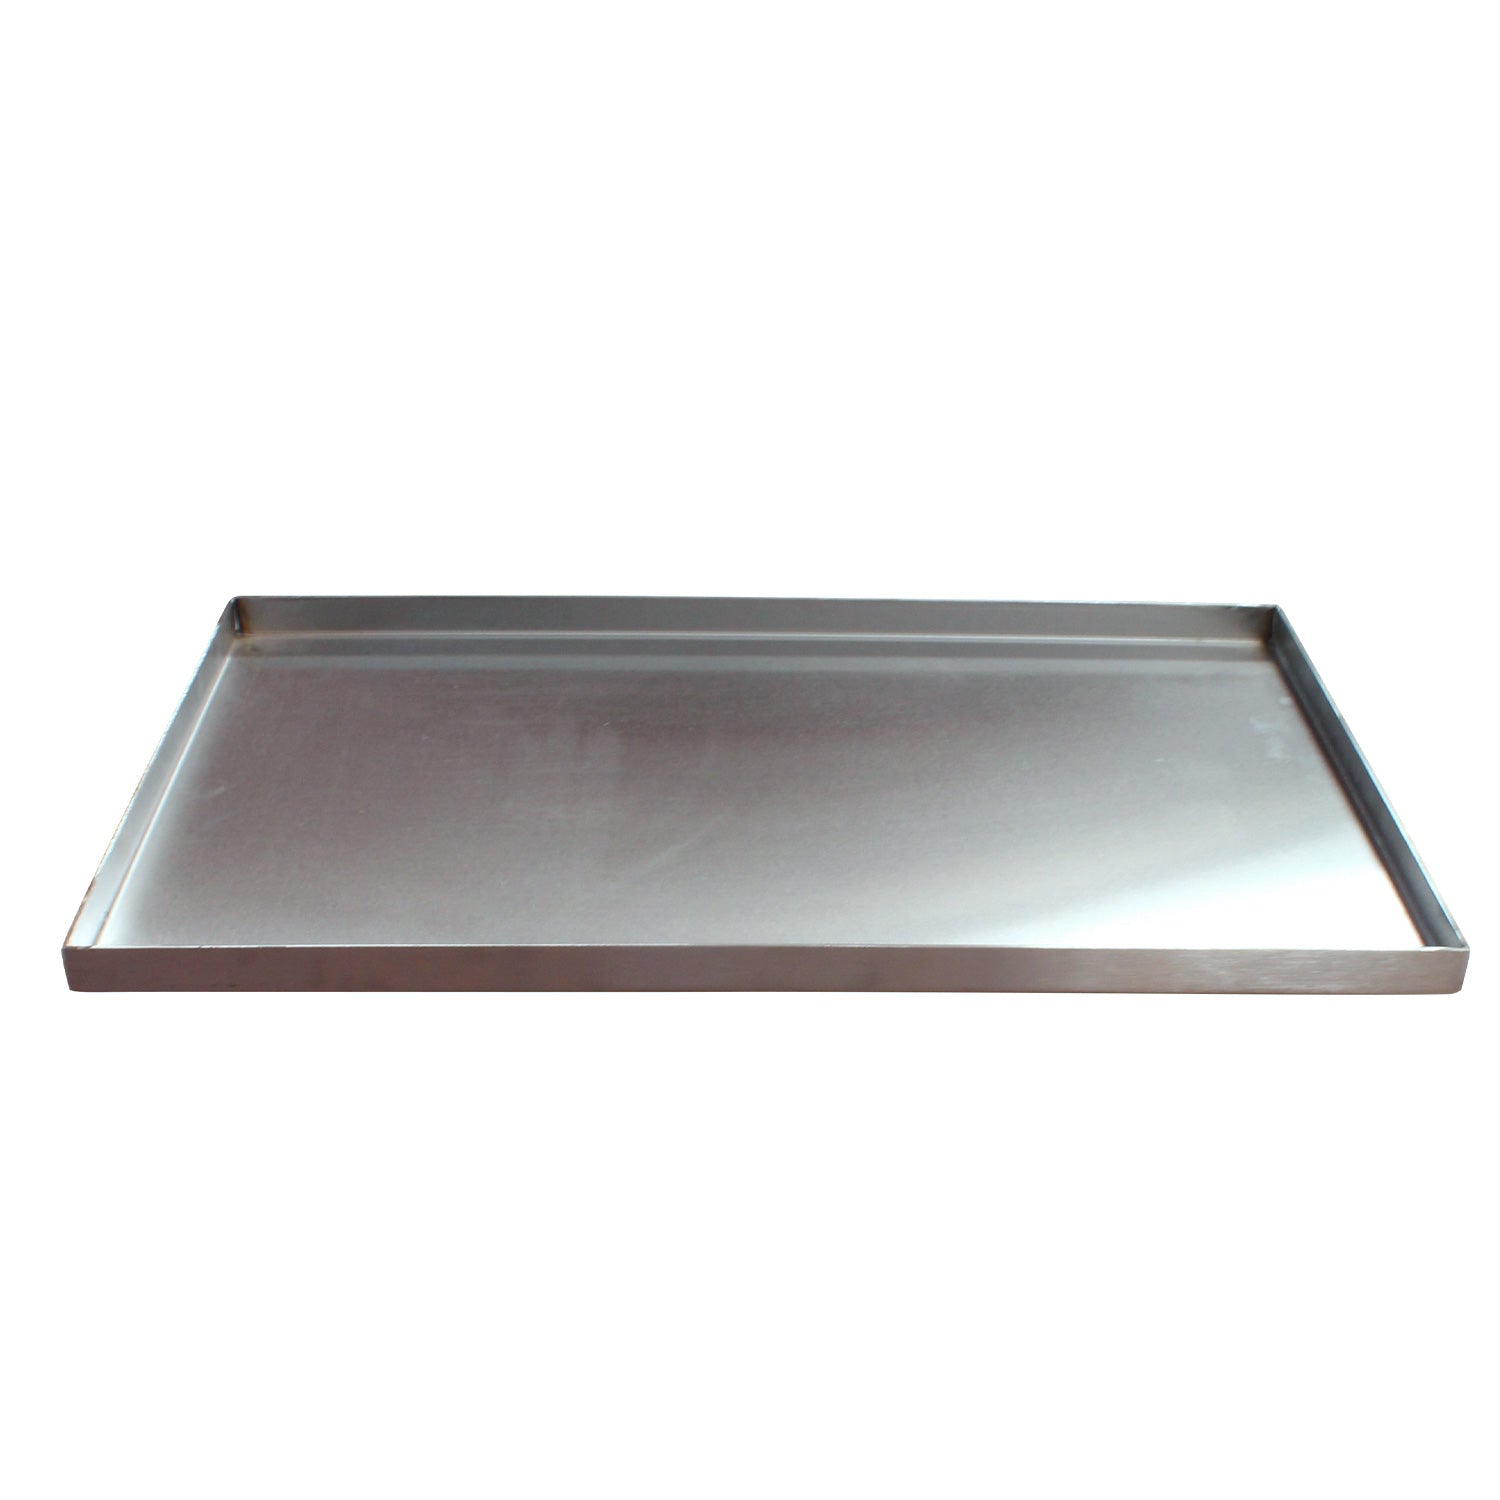 Plancha de acero inoxidable para parrilla y cocina - Rectangular mediana